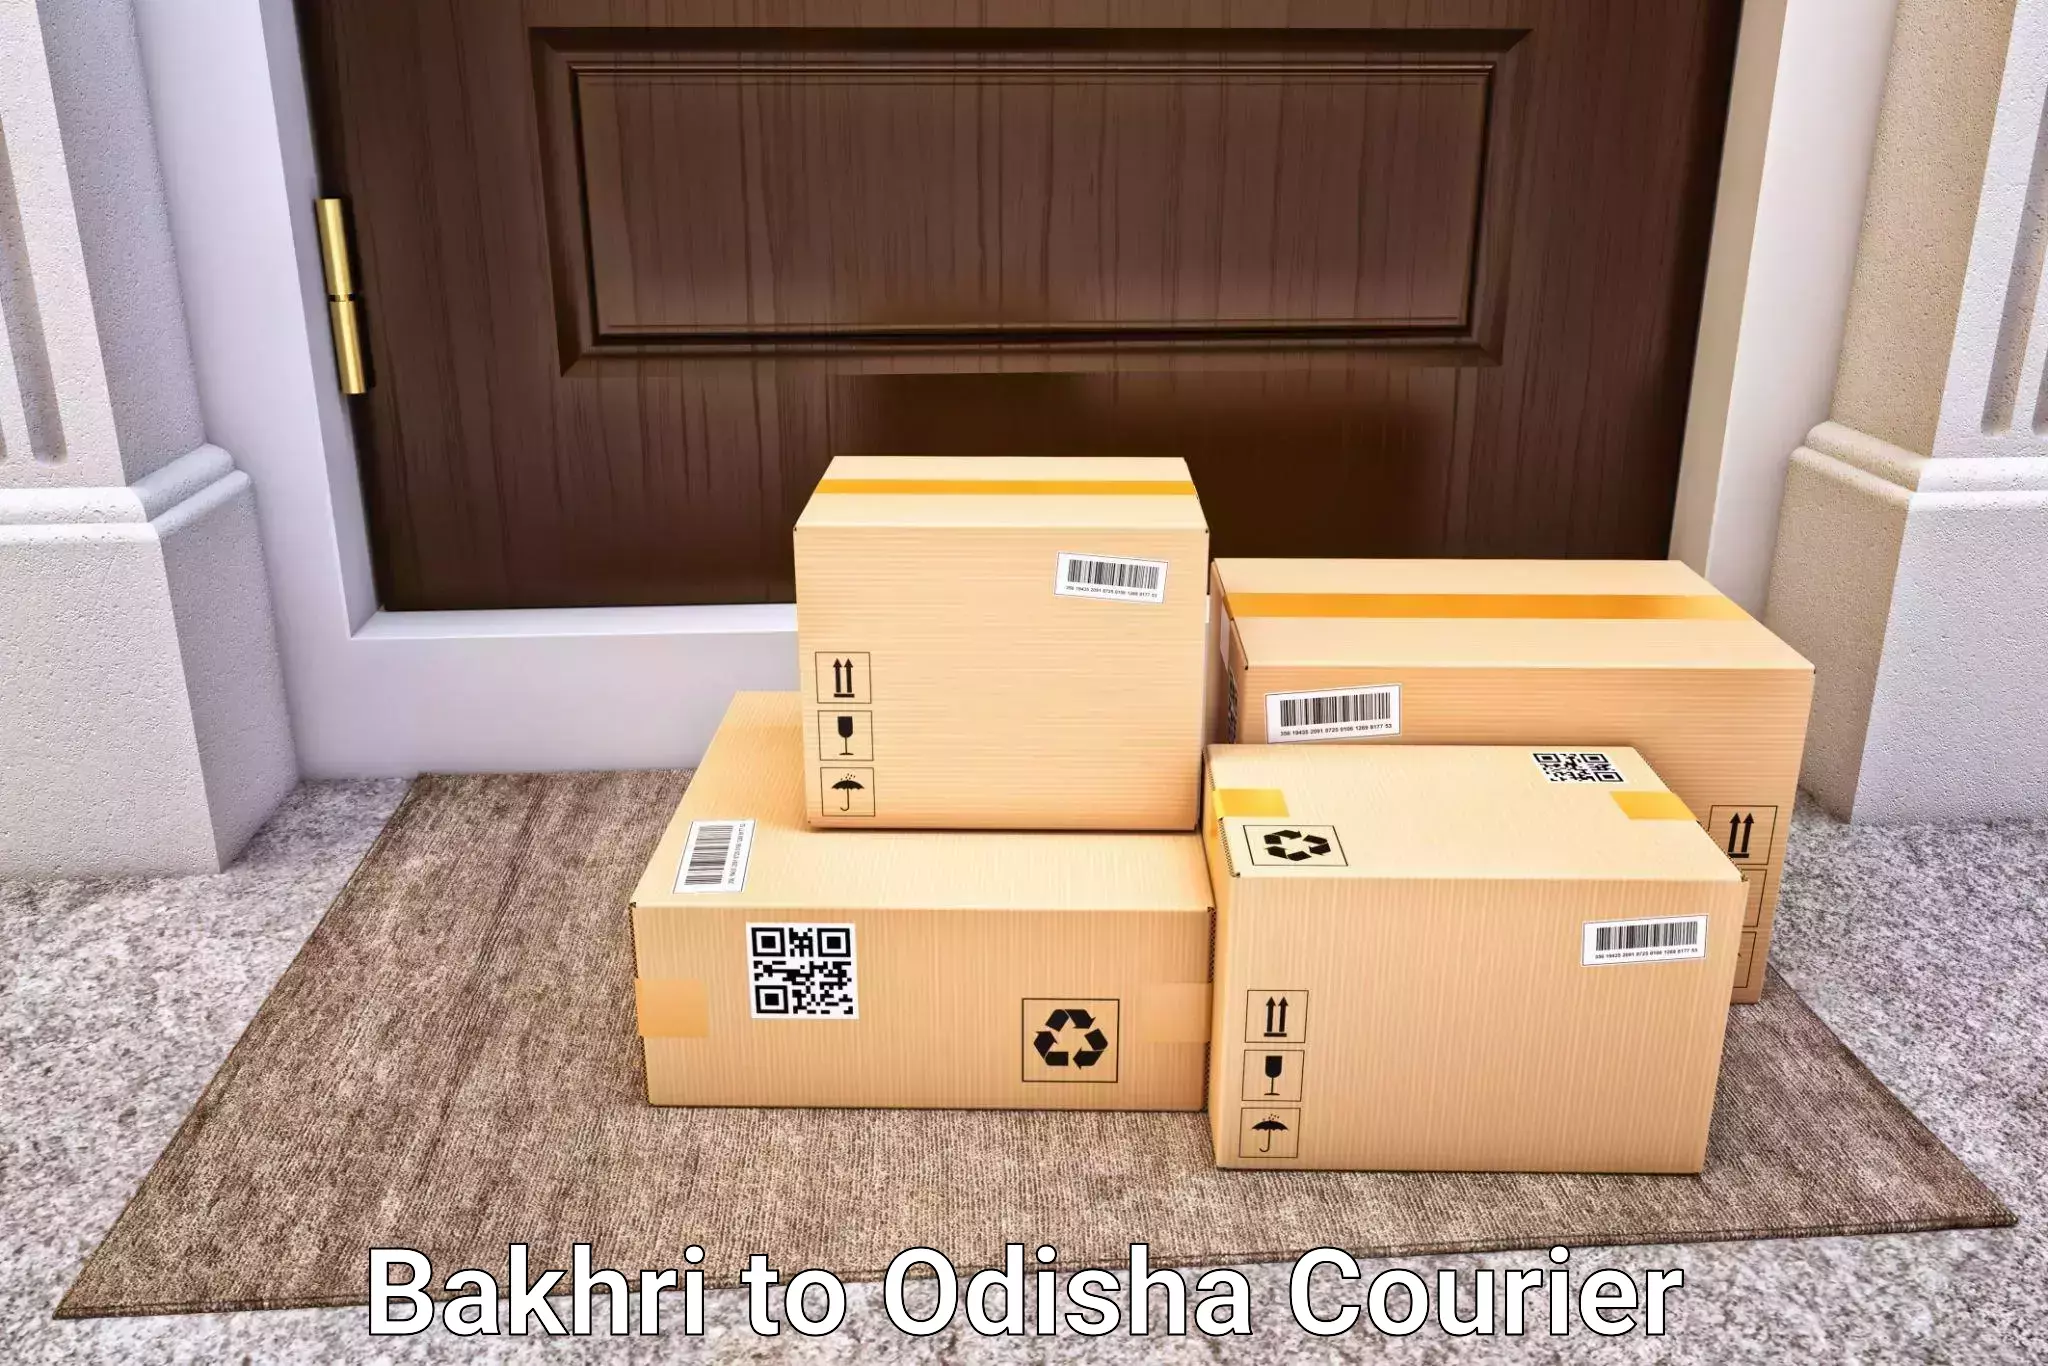 Luggage transport company Bakhri to Jaipatna